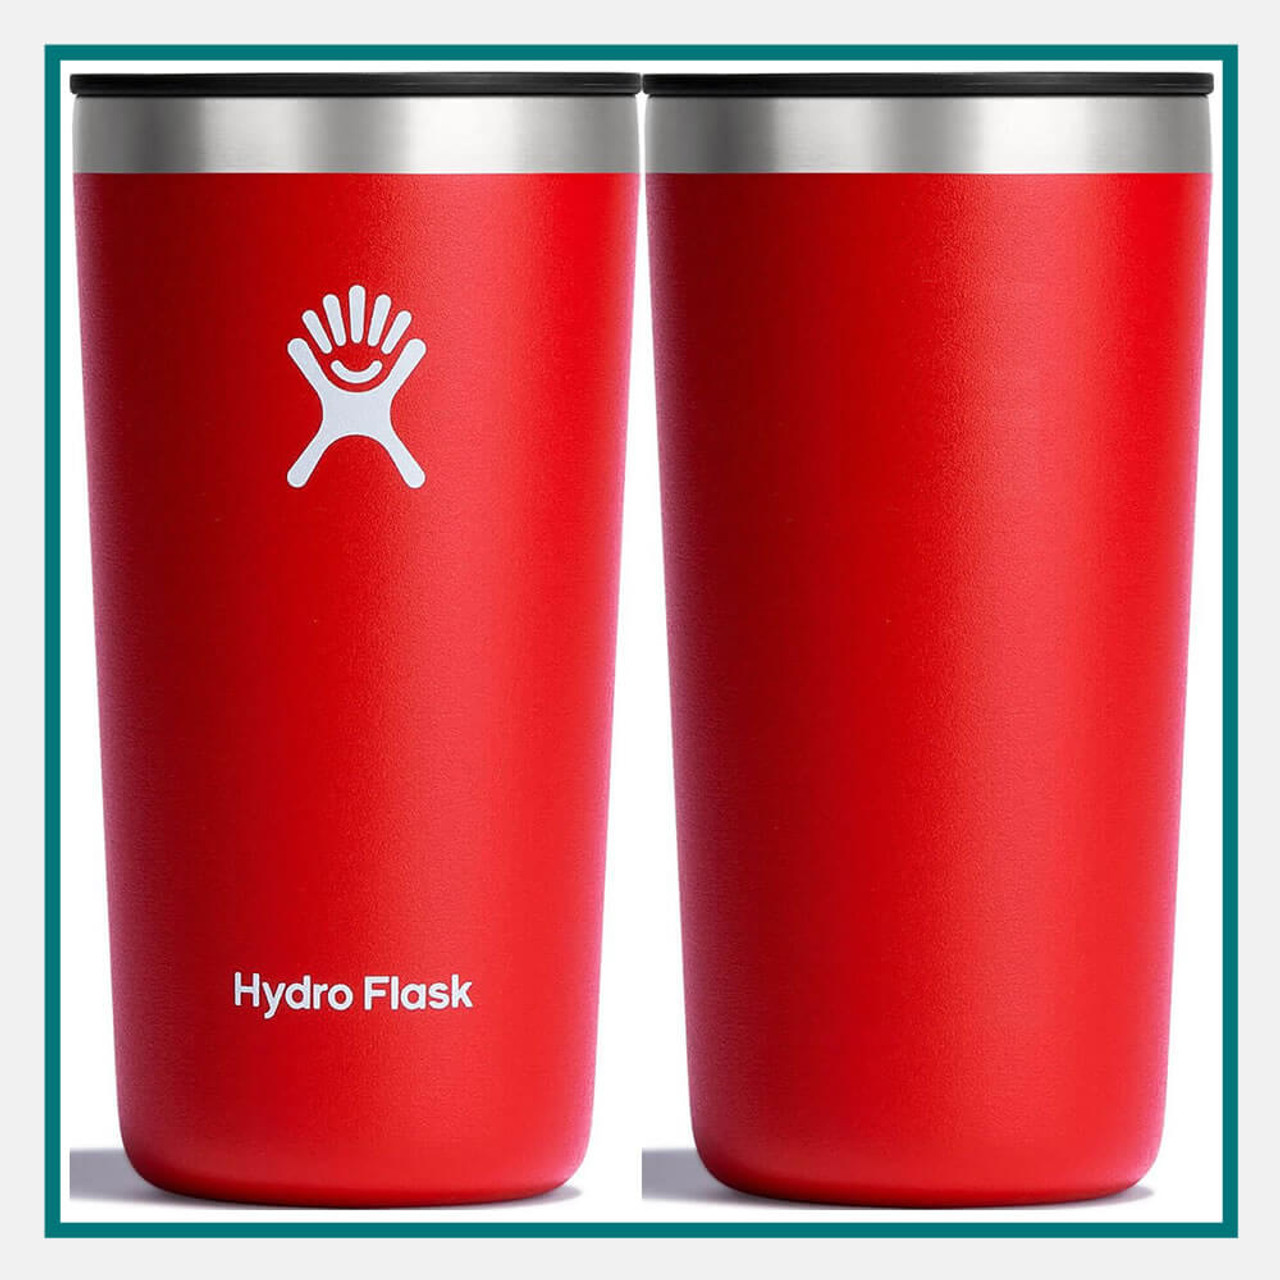 Hydro Flask All Around Tumbler Comparison 28 oz 20oz and 12 oz